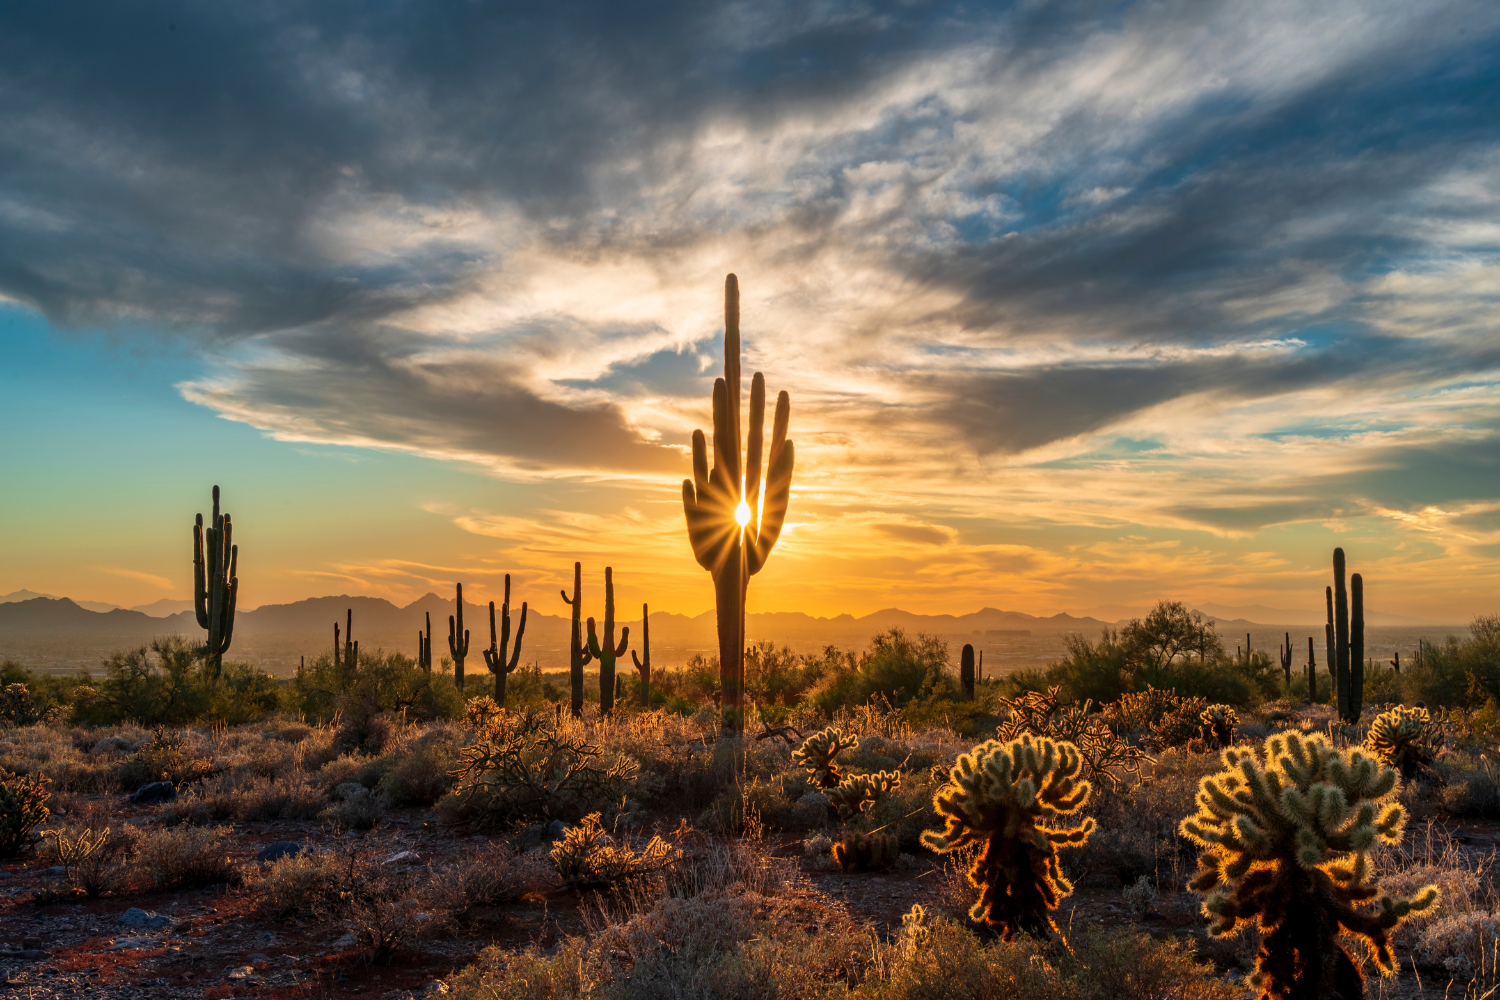 Cactus in Sonoran Desert at sunset